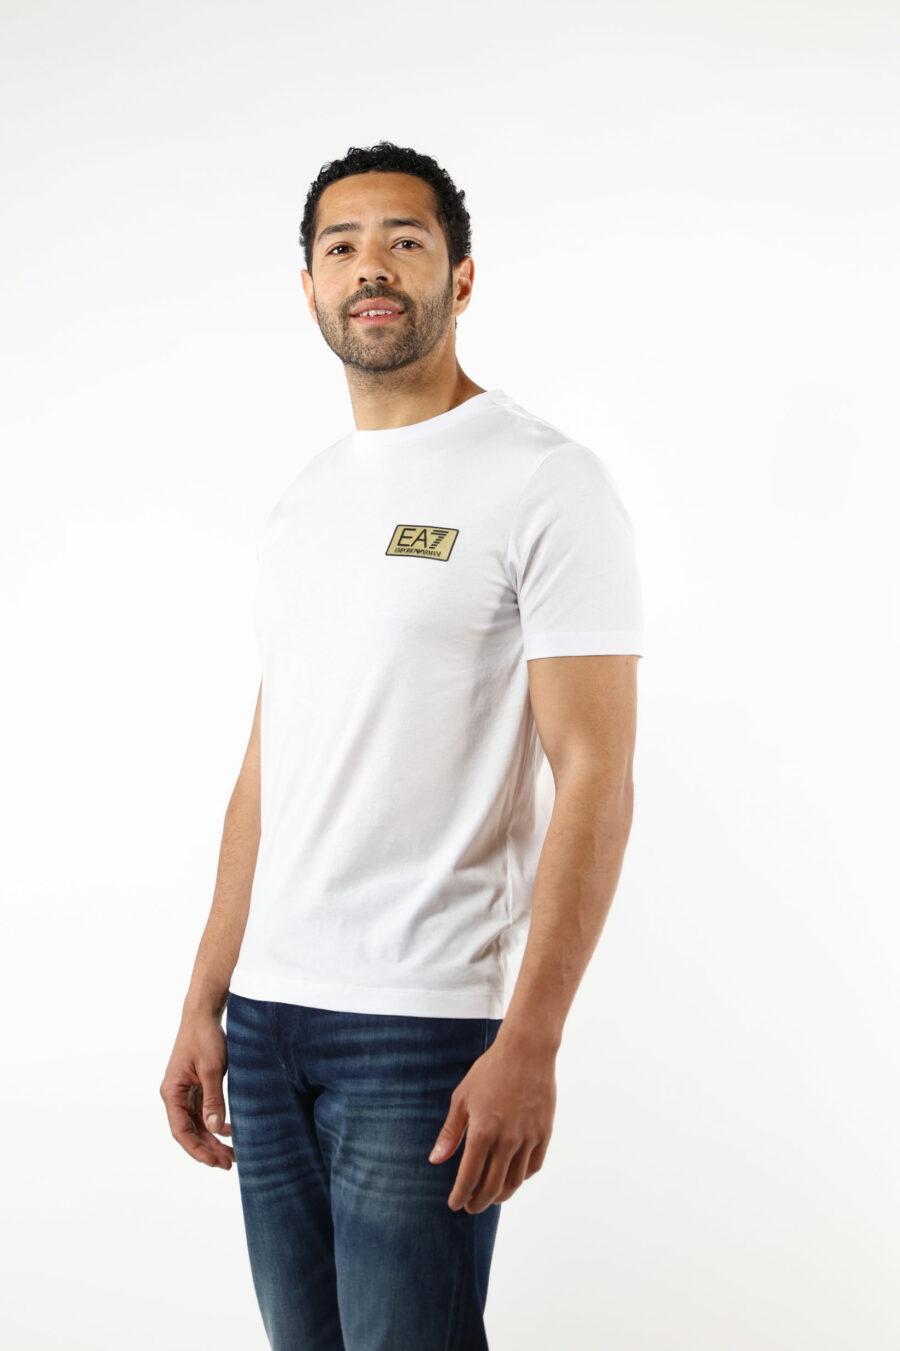 Camiseta blanca con minilogo "lux identity" en placa dorada - 110804